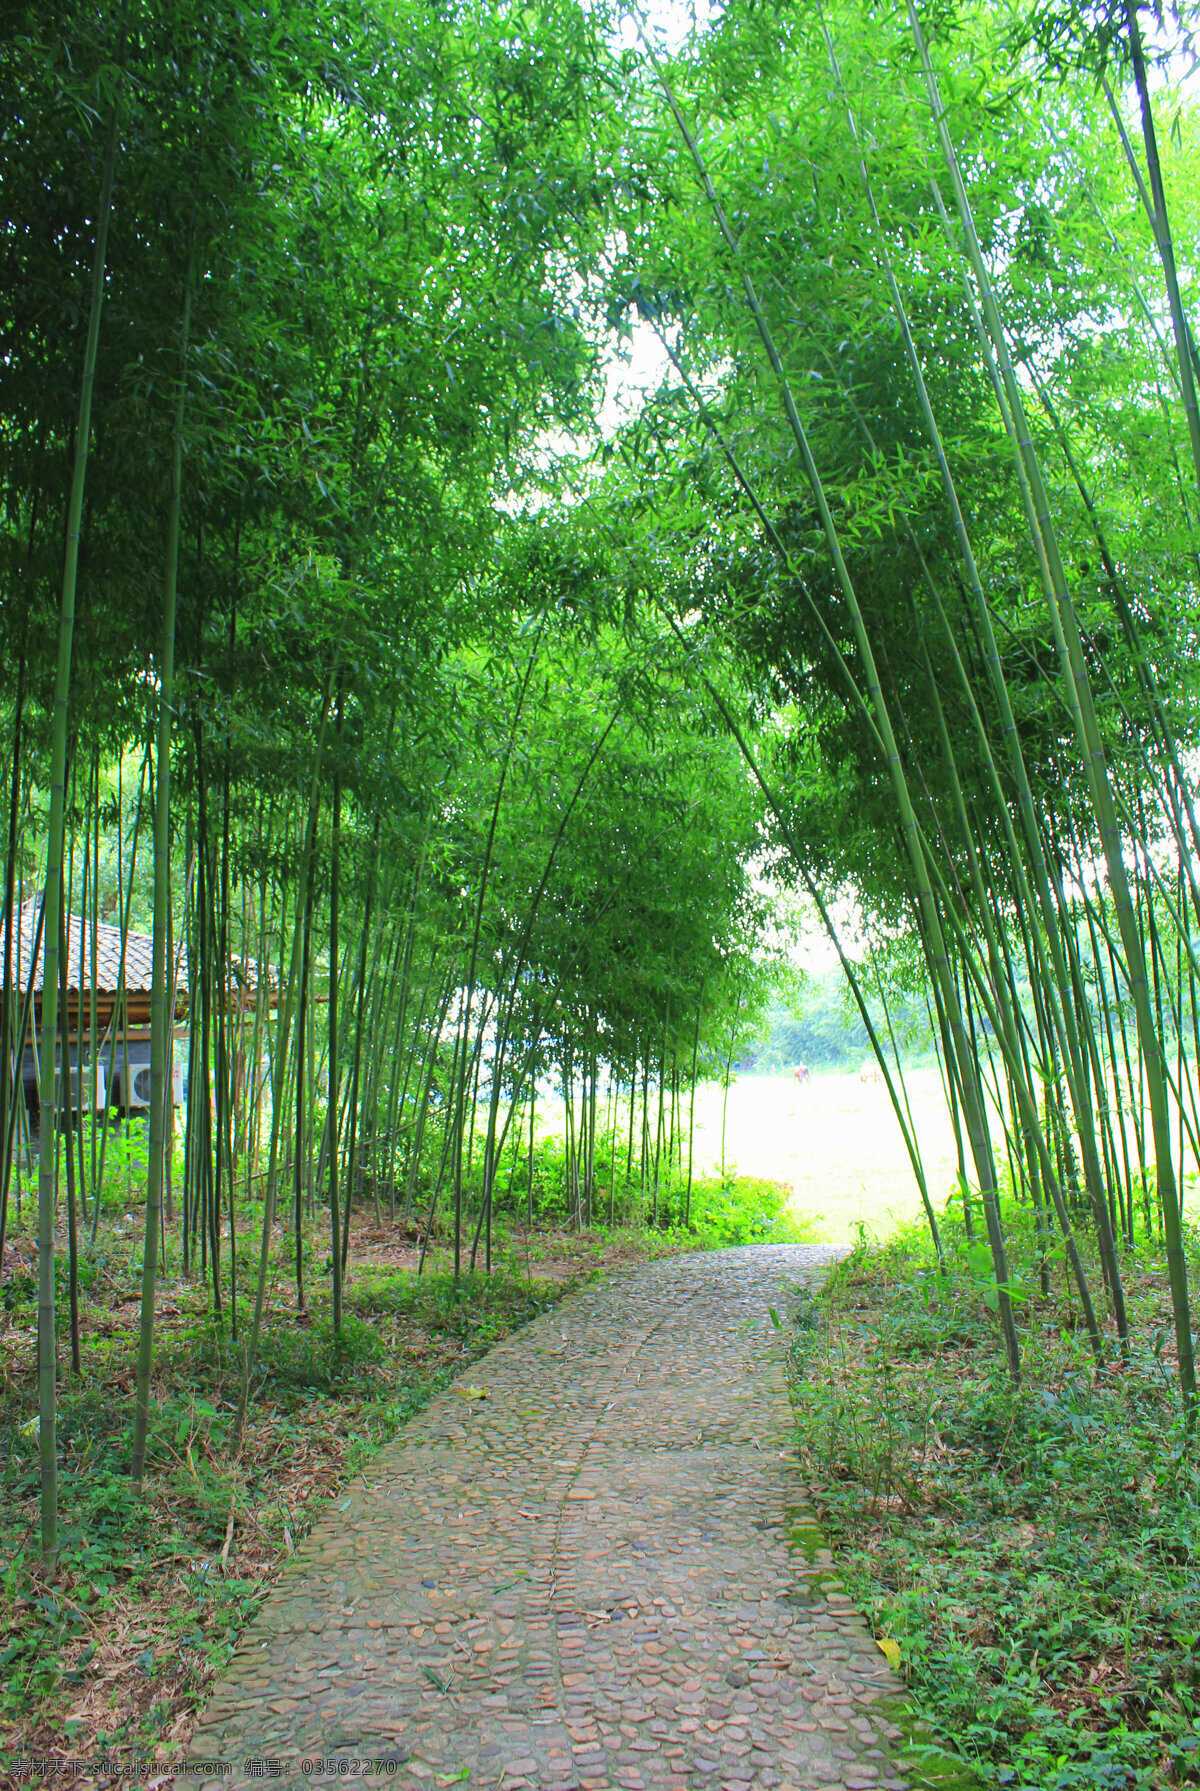 竹子 竹林 双溪漂流竹林 自然美景 自然环保 竹海 笔杆 绿竹 雅竹 竹 竹林深处 生物世界 树木树叶